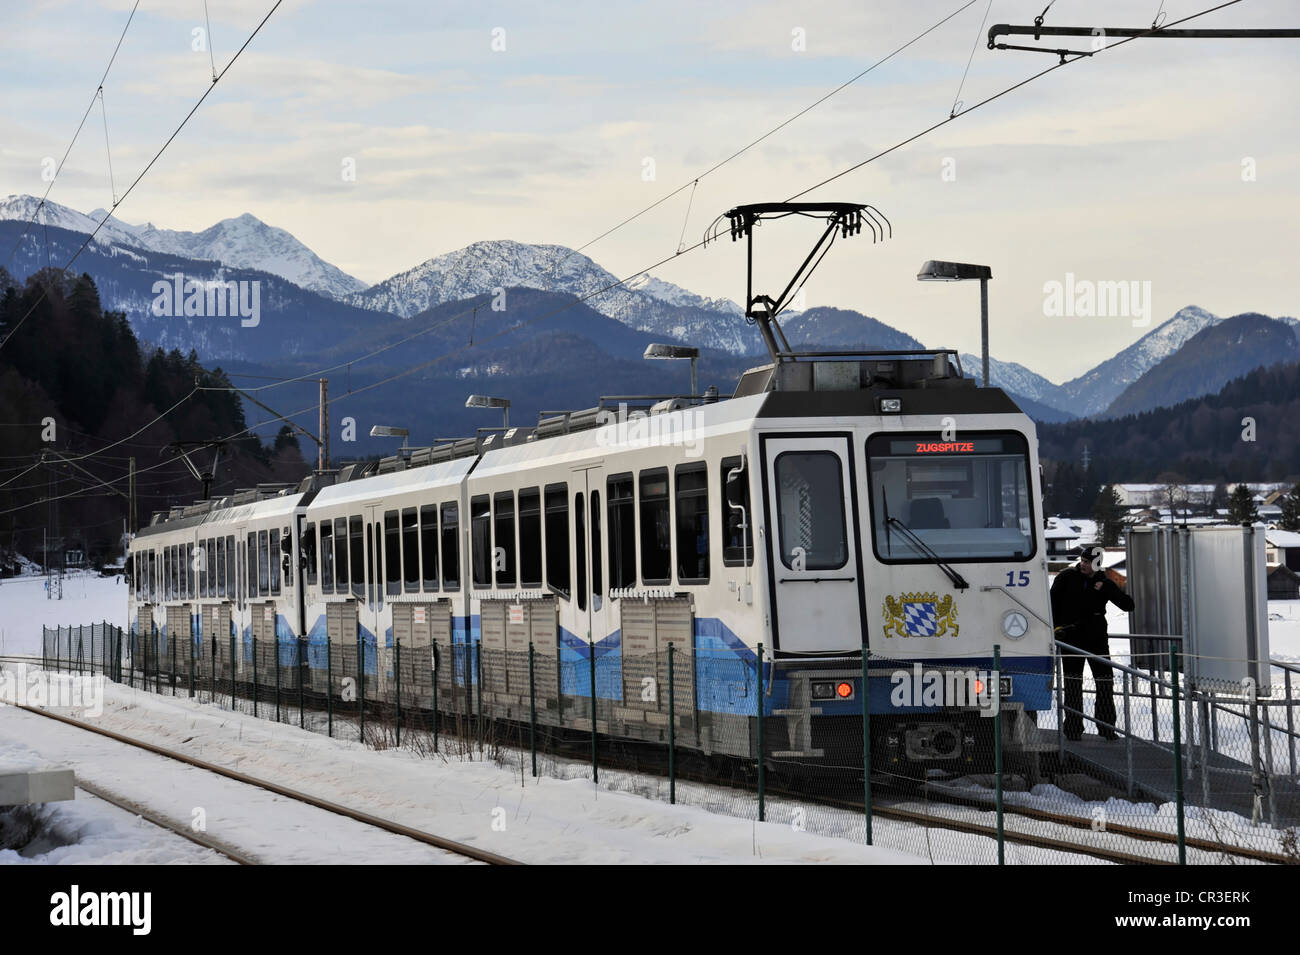 Bayerische Zugspitzbahn Bavarian railway on Mt. Zugspitze, cog railway, at Garmisch-Partenkirchen, Bavaria, Germany, Europe Stock Photo